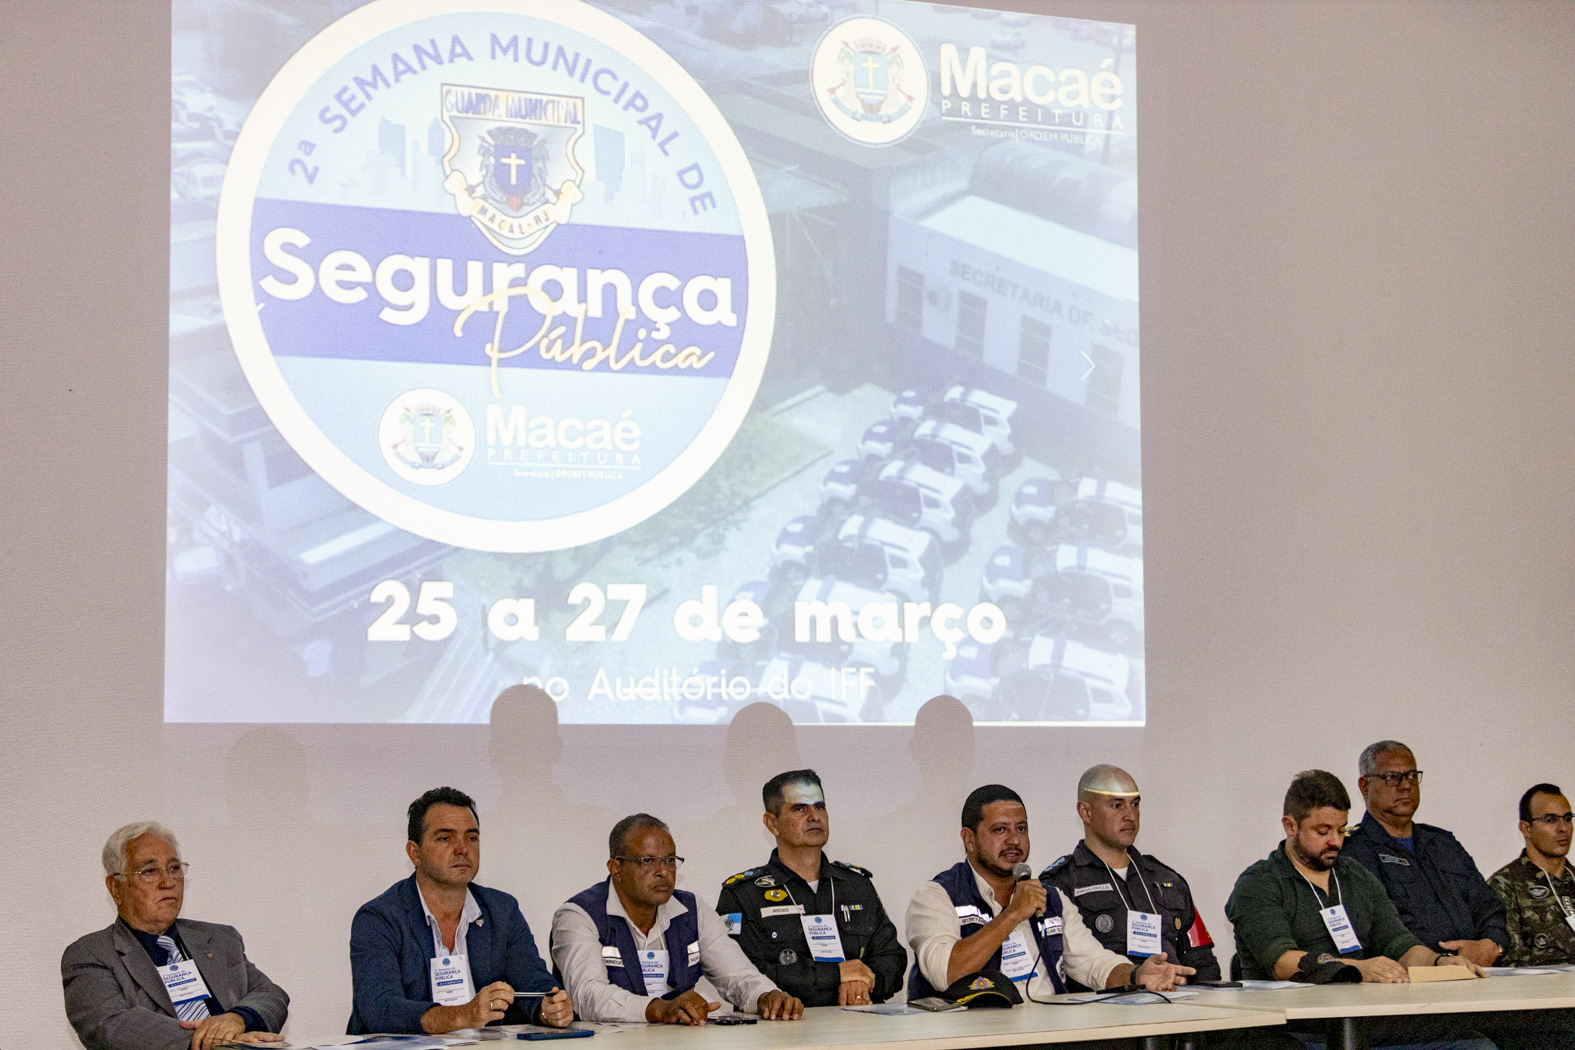 O Secretário de Ordem Pública, Alan de Oliveira, comentou sobre a evolução institucional da Guarda Municipal de Macaé